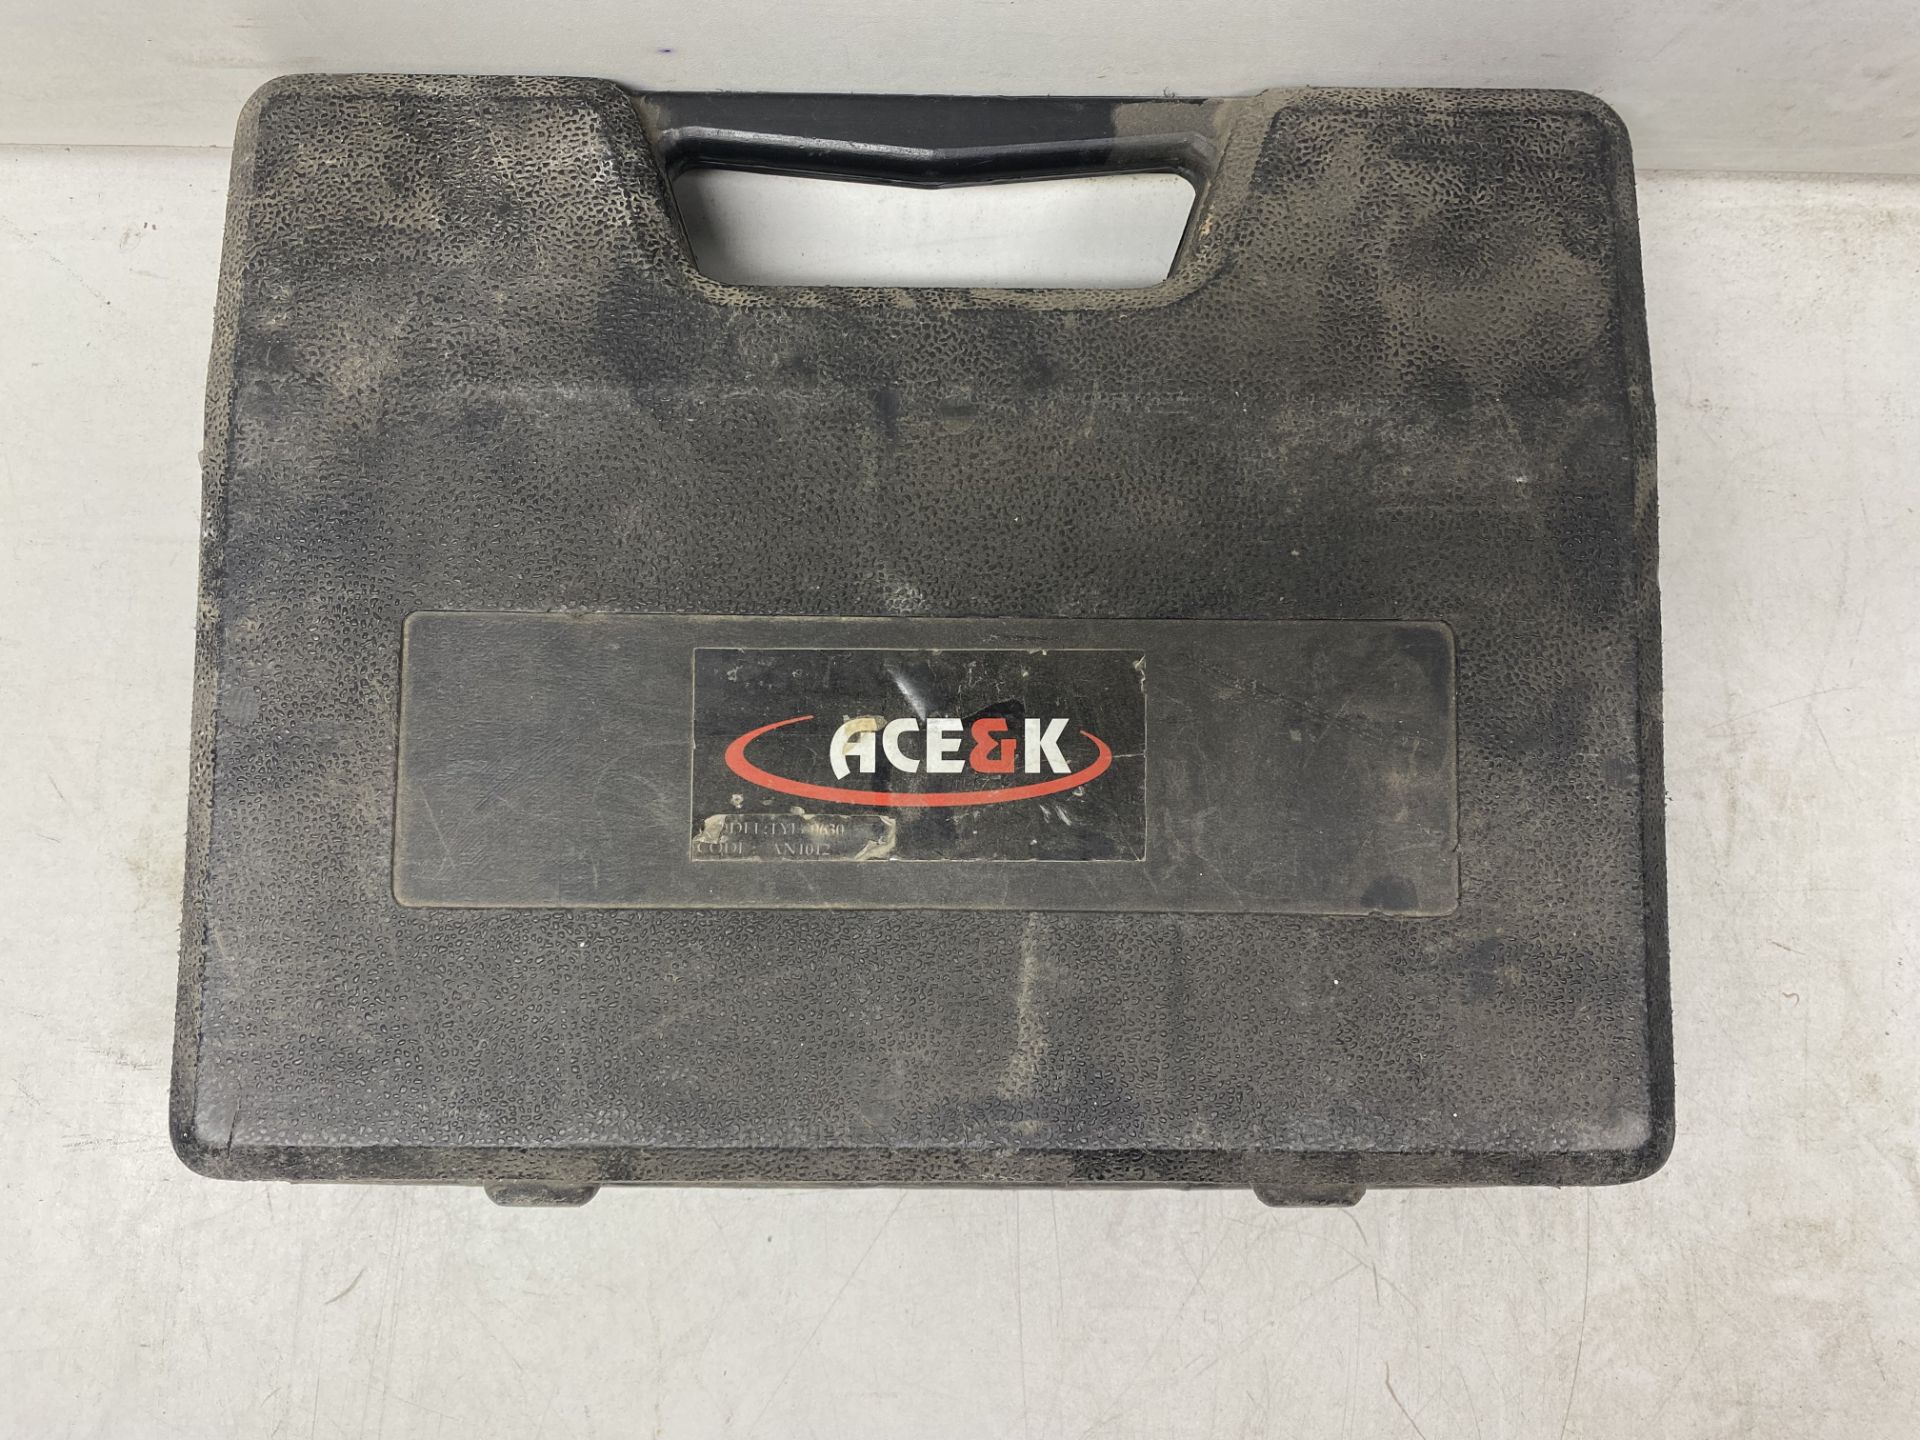 ACE&K TYI-0630 Air Nailer/Stapler - Image 6 of 6